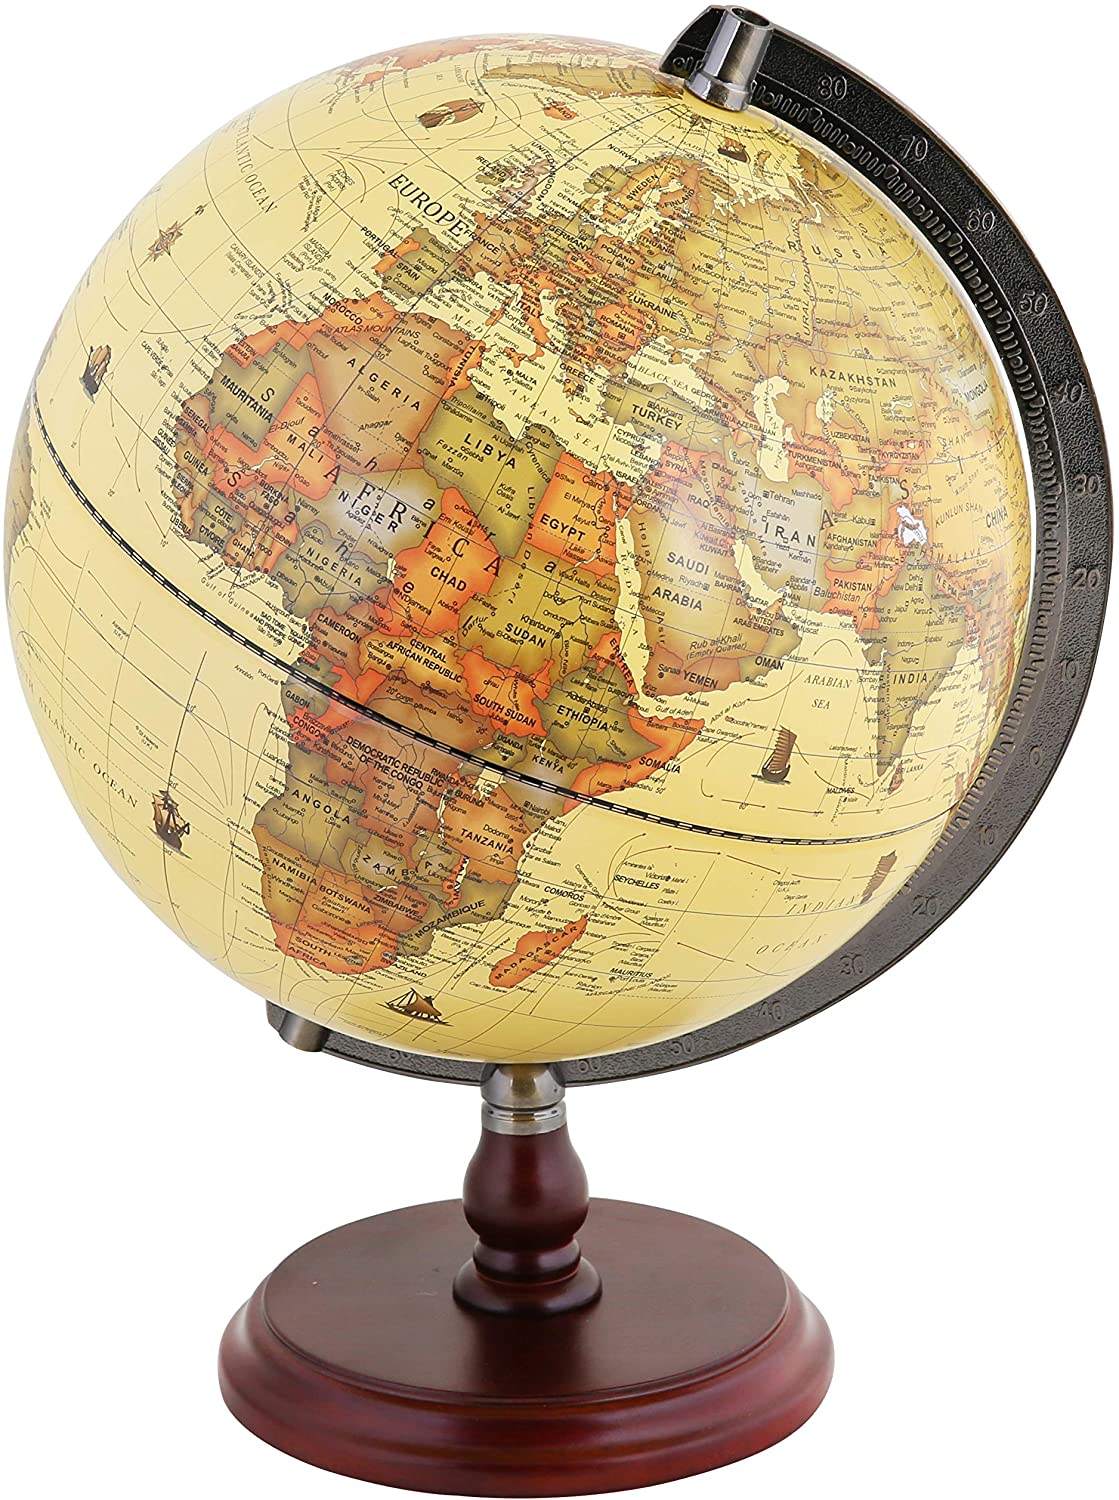 éducatif/géographiques/moderne de bureau décoration Dia 25 cm Exerz globe terrestre 